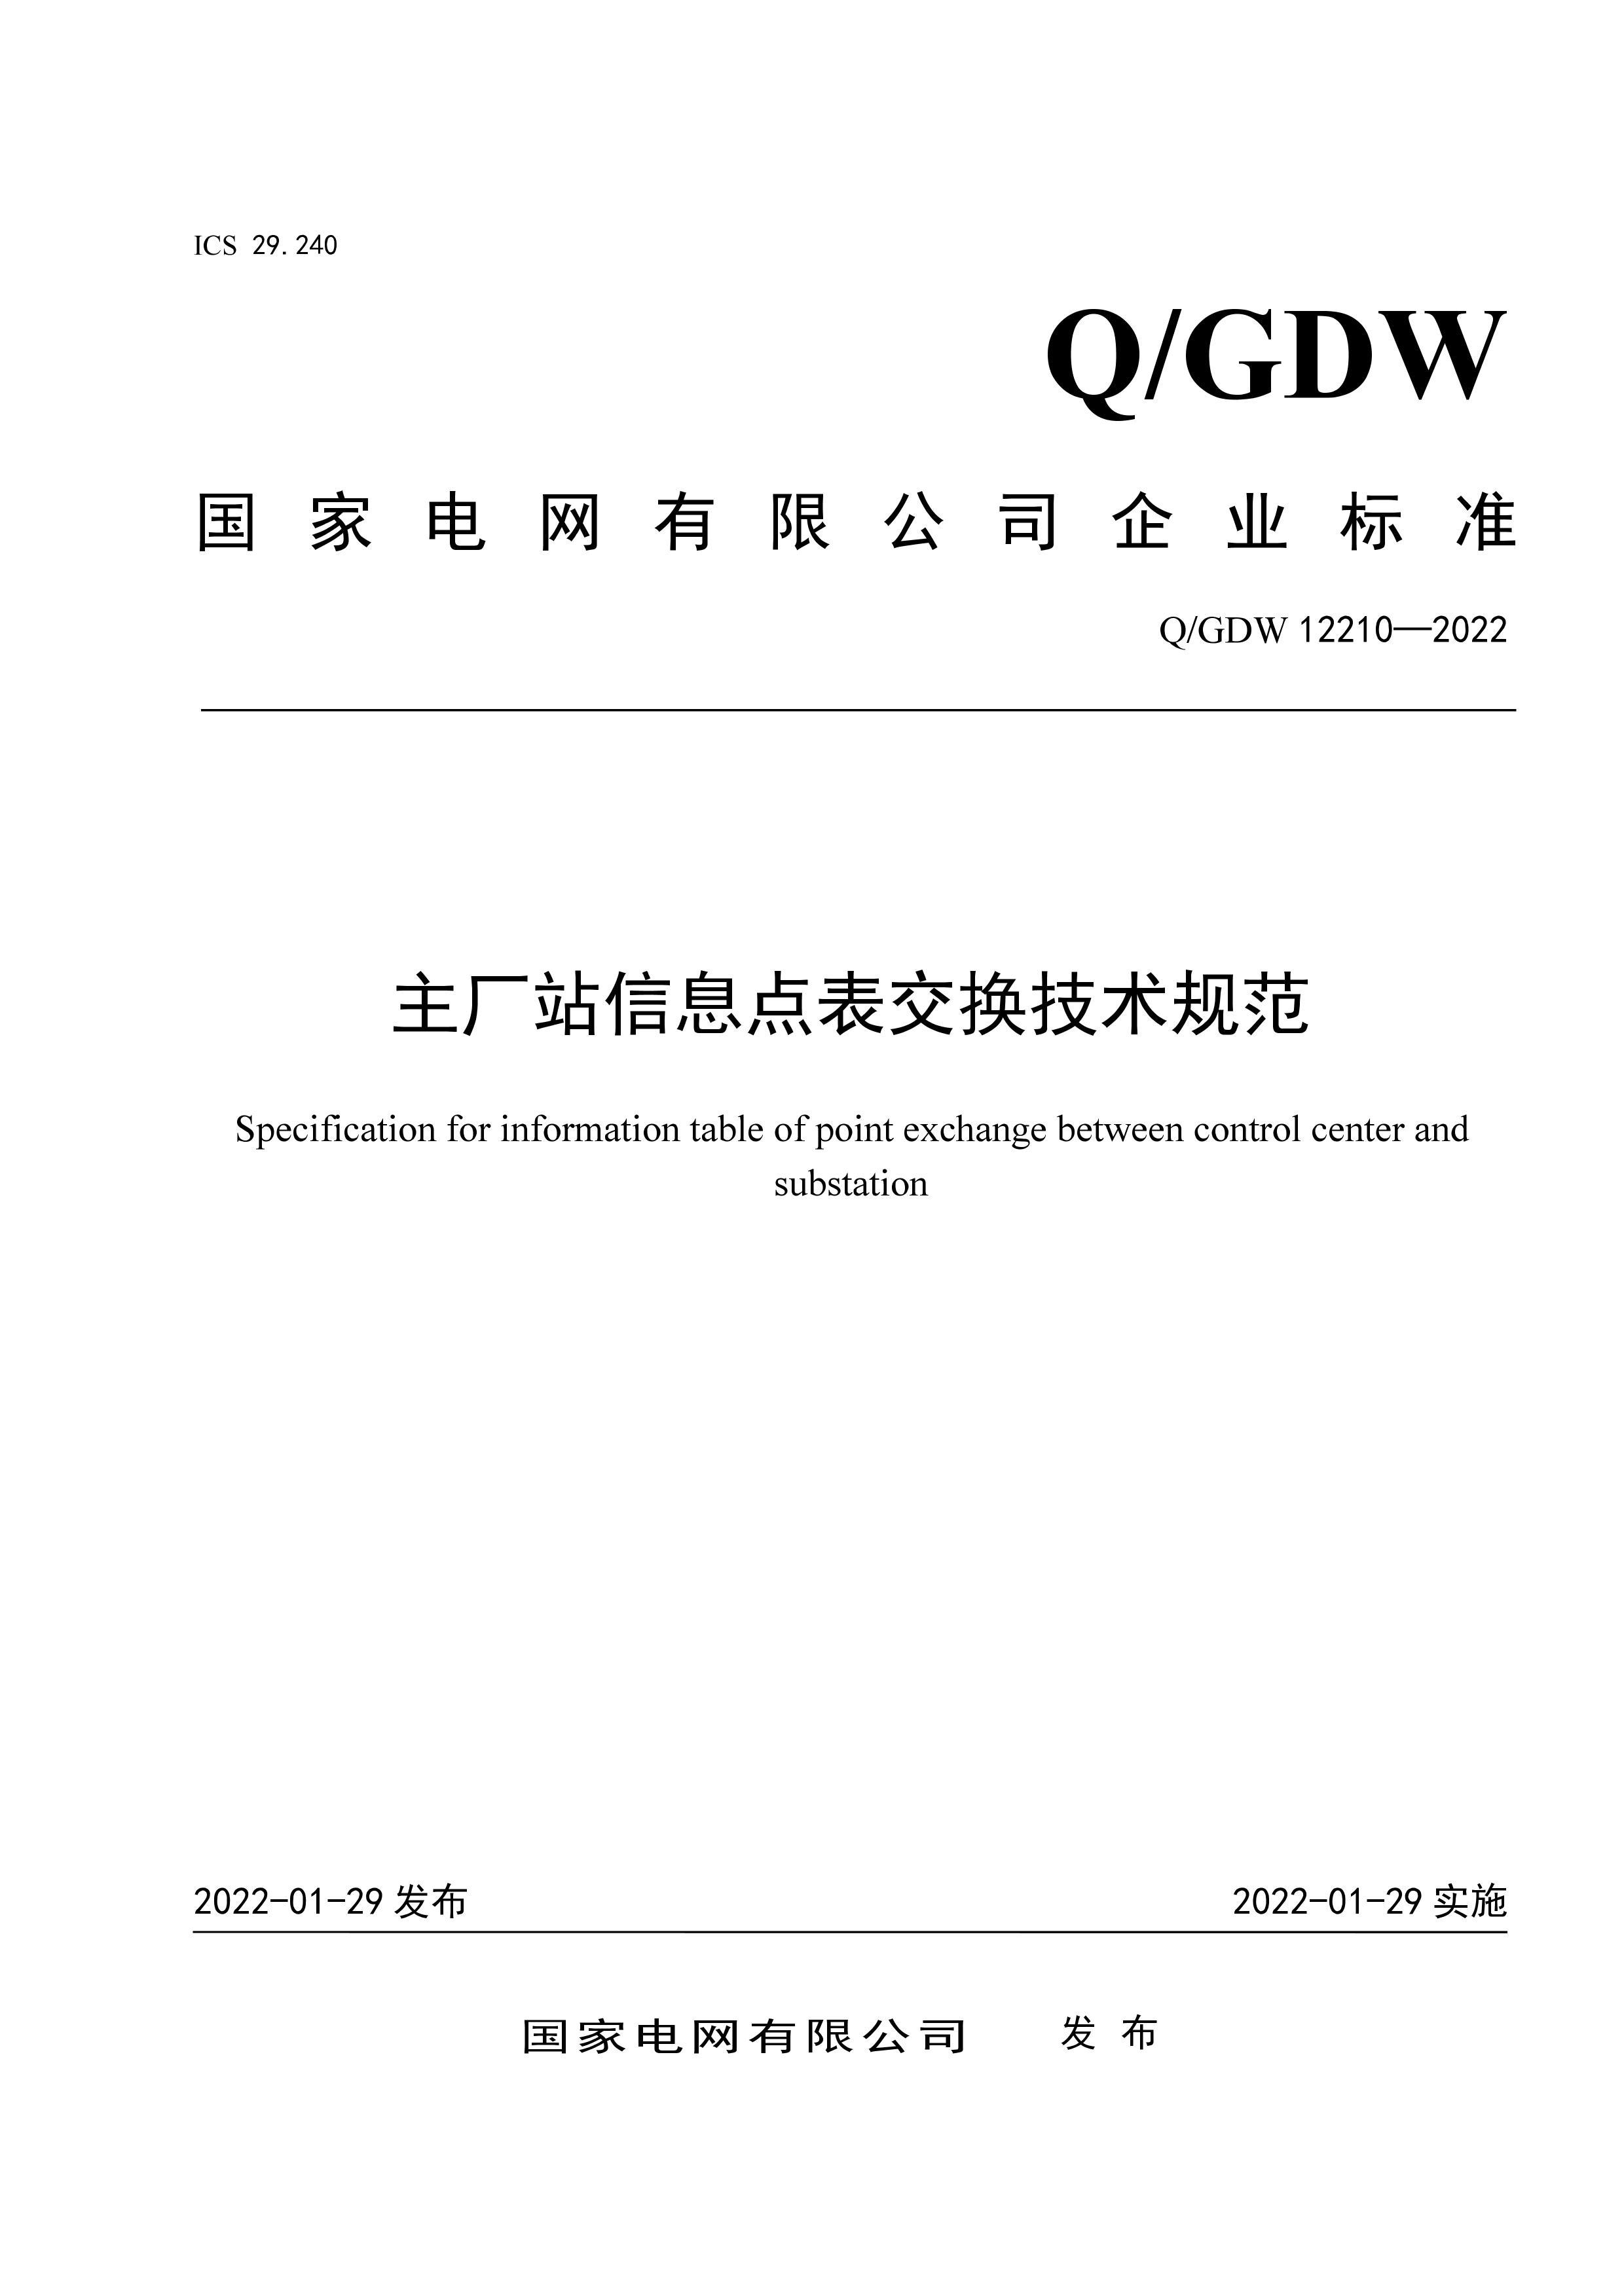 QGDW 12210-2022 վϢ淶.pdf1ҳ